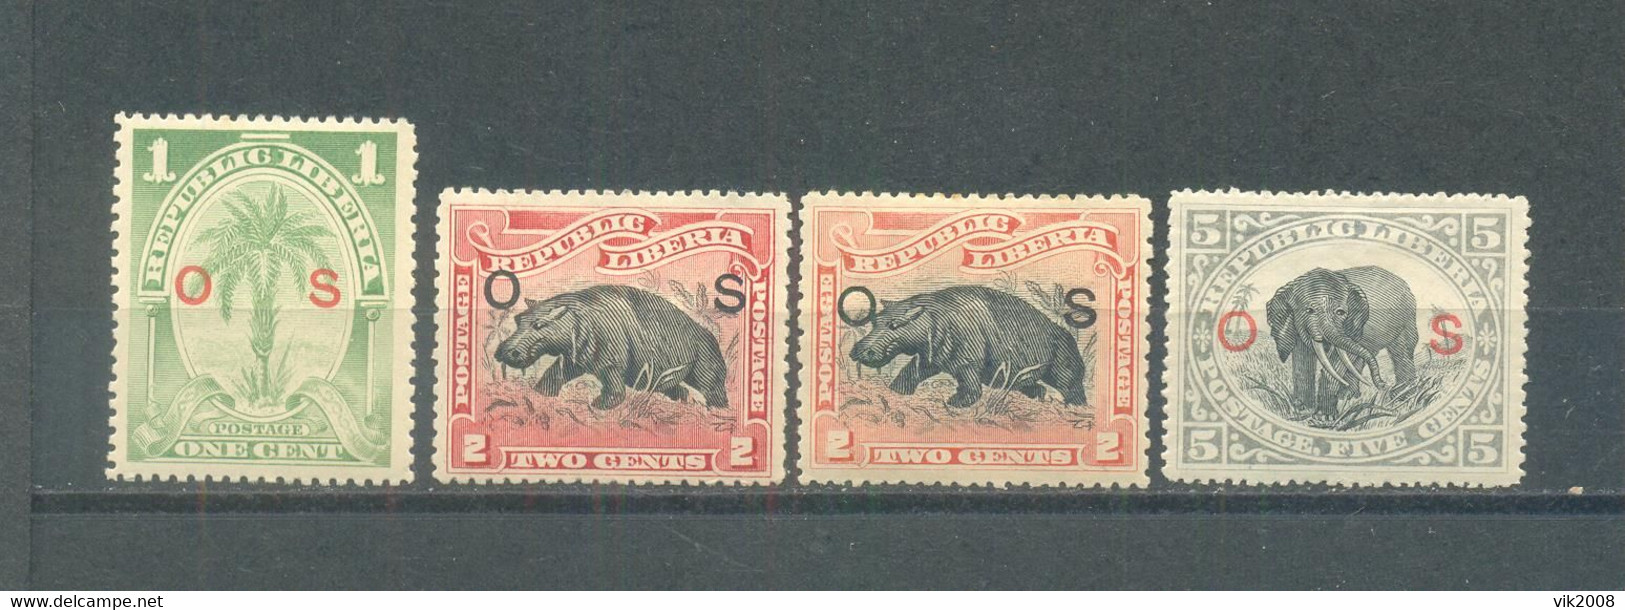 Liberia 1900  MLH Service Stamps - Liberia